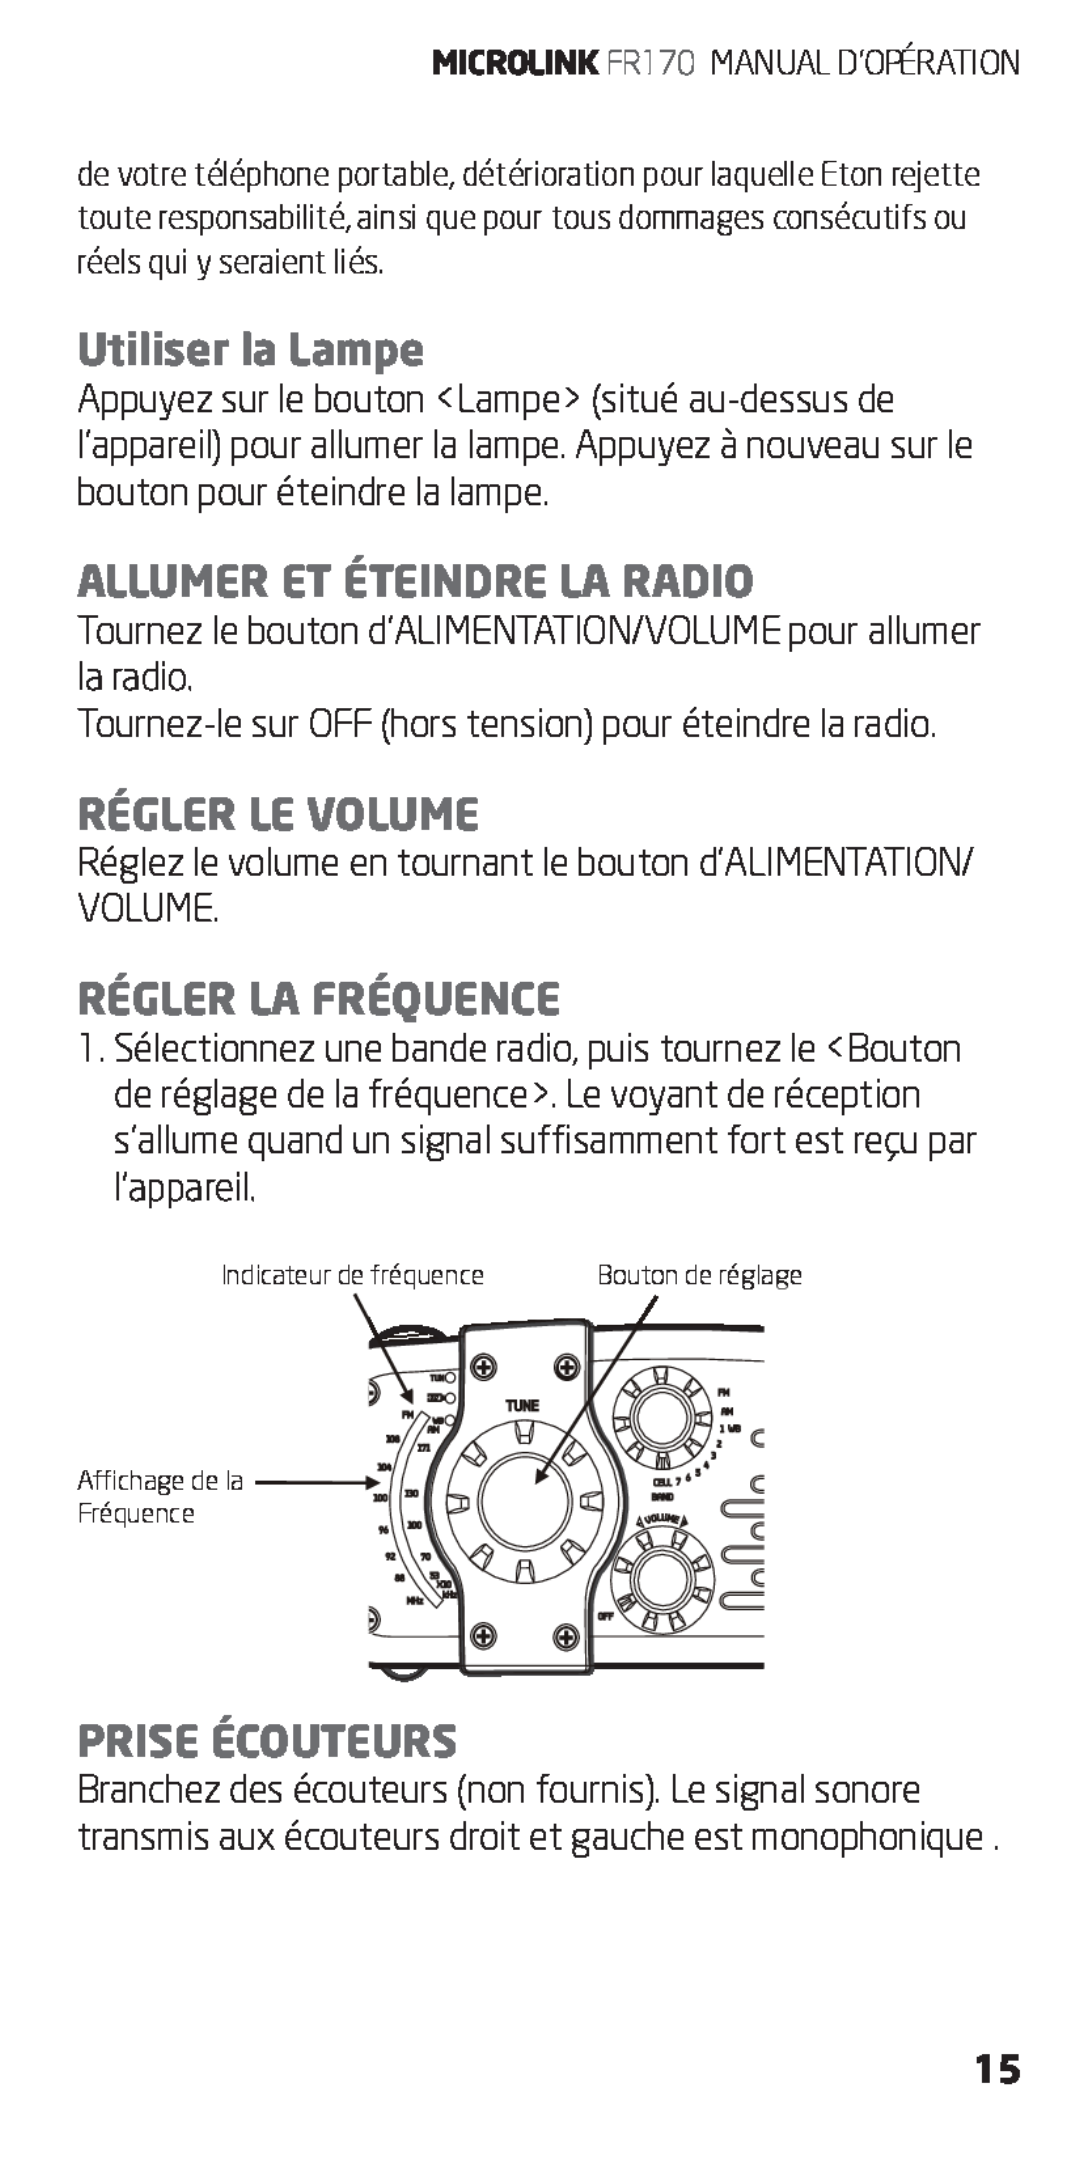 Eton FR170 Utiliser la Lampe, Allumer Et Éteindre La Radio, Régler Le Volume, Régler La Fréquence, Prise Écouteurs 